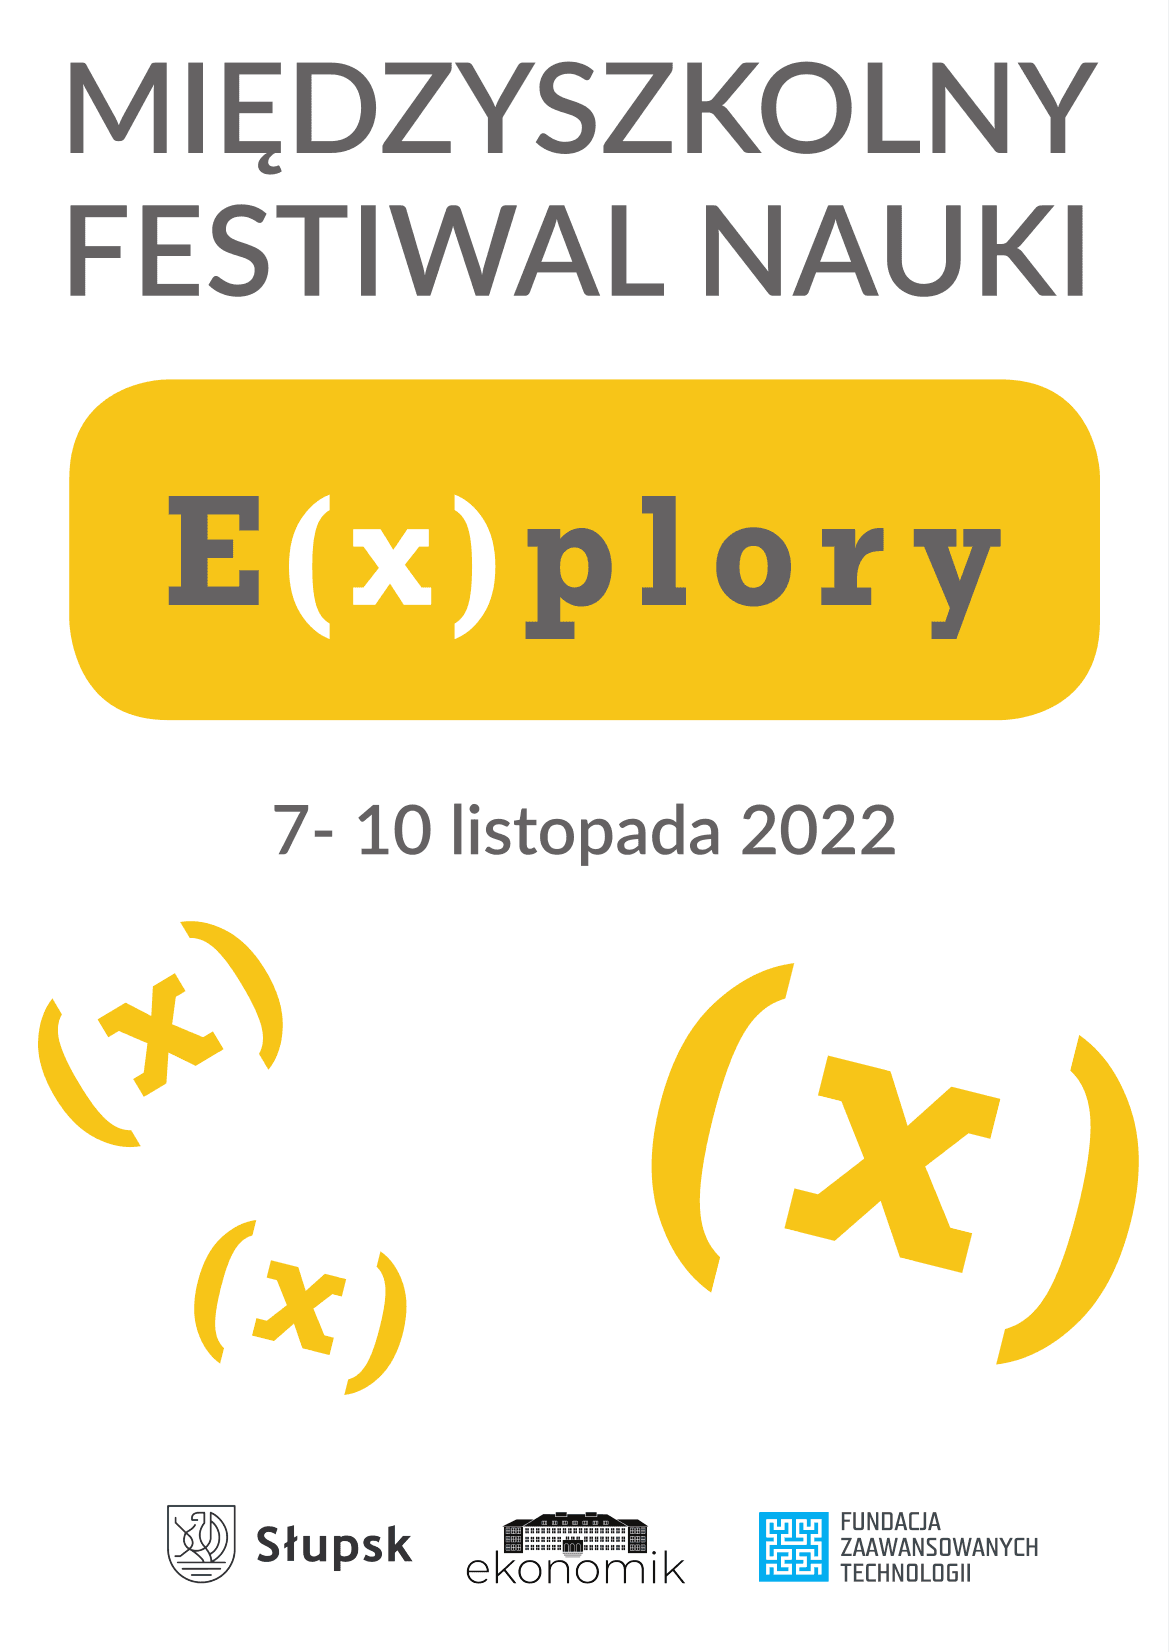 Międzyszkolny Festiwal Nauki E(x)plory